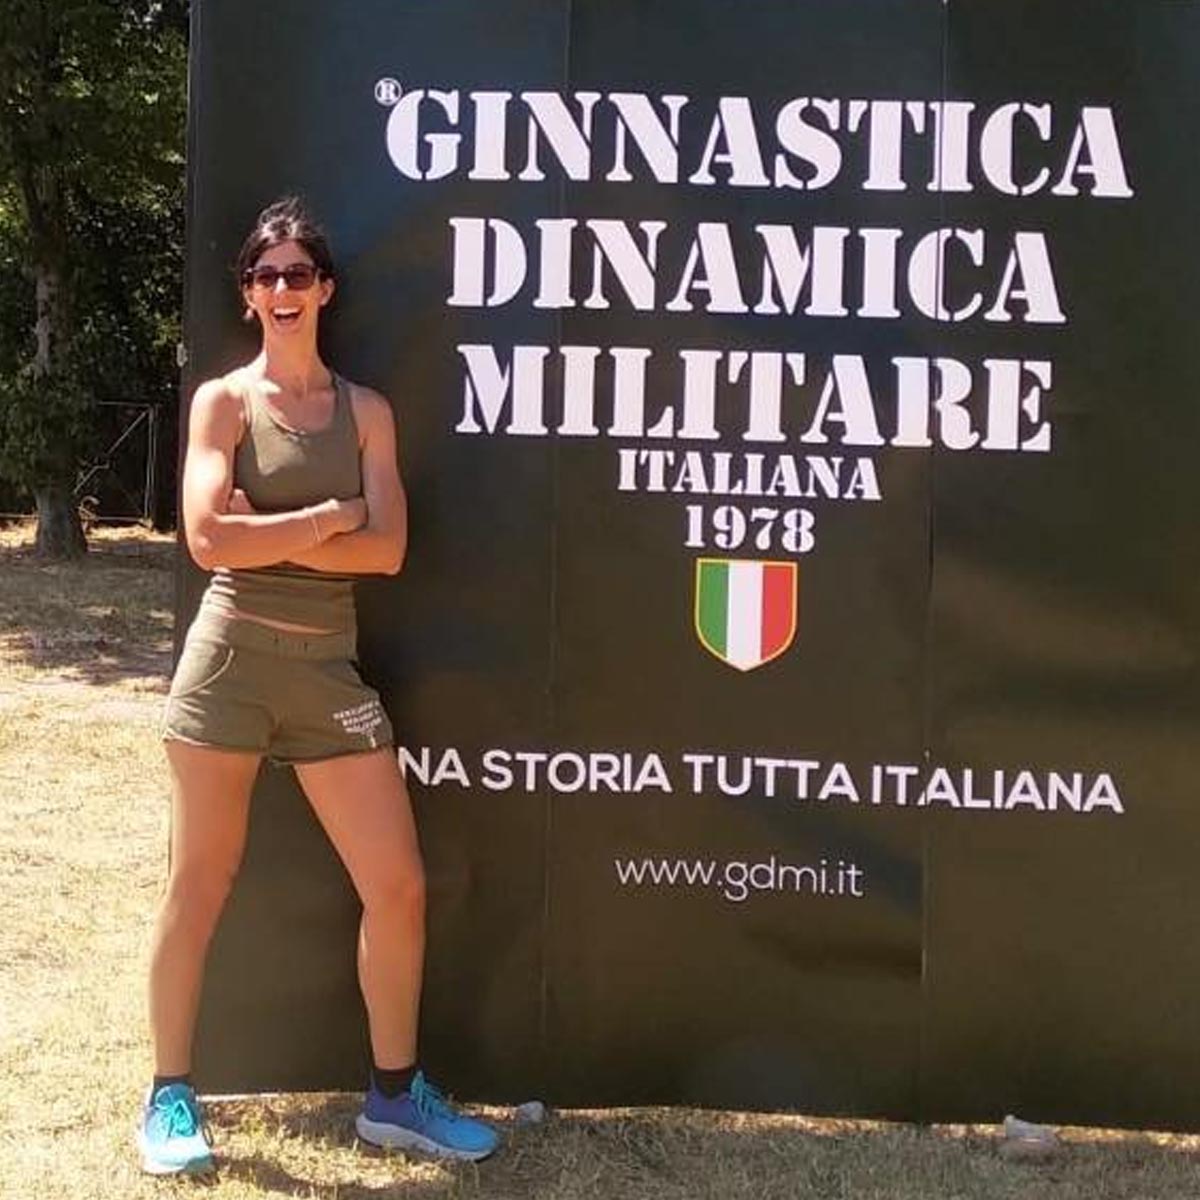 Intervista a Ilaria Casali istruttrice Gdmi a Calcinato – BS